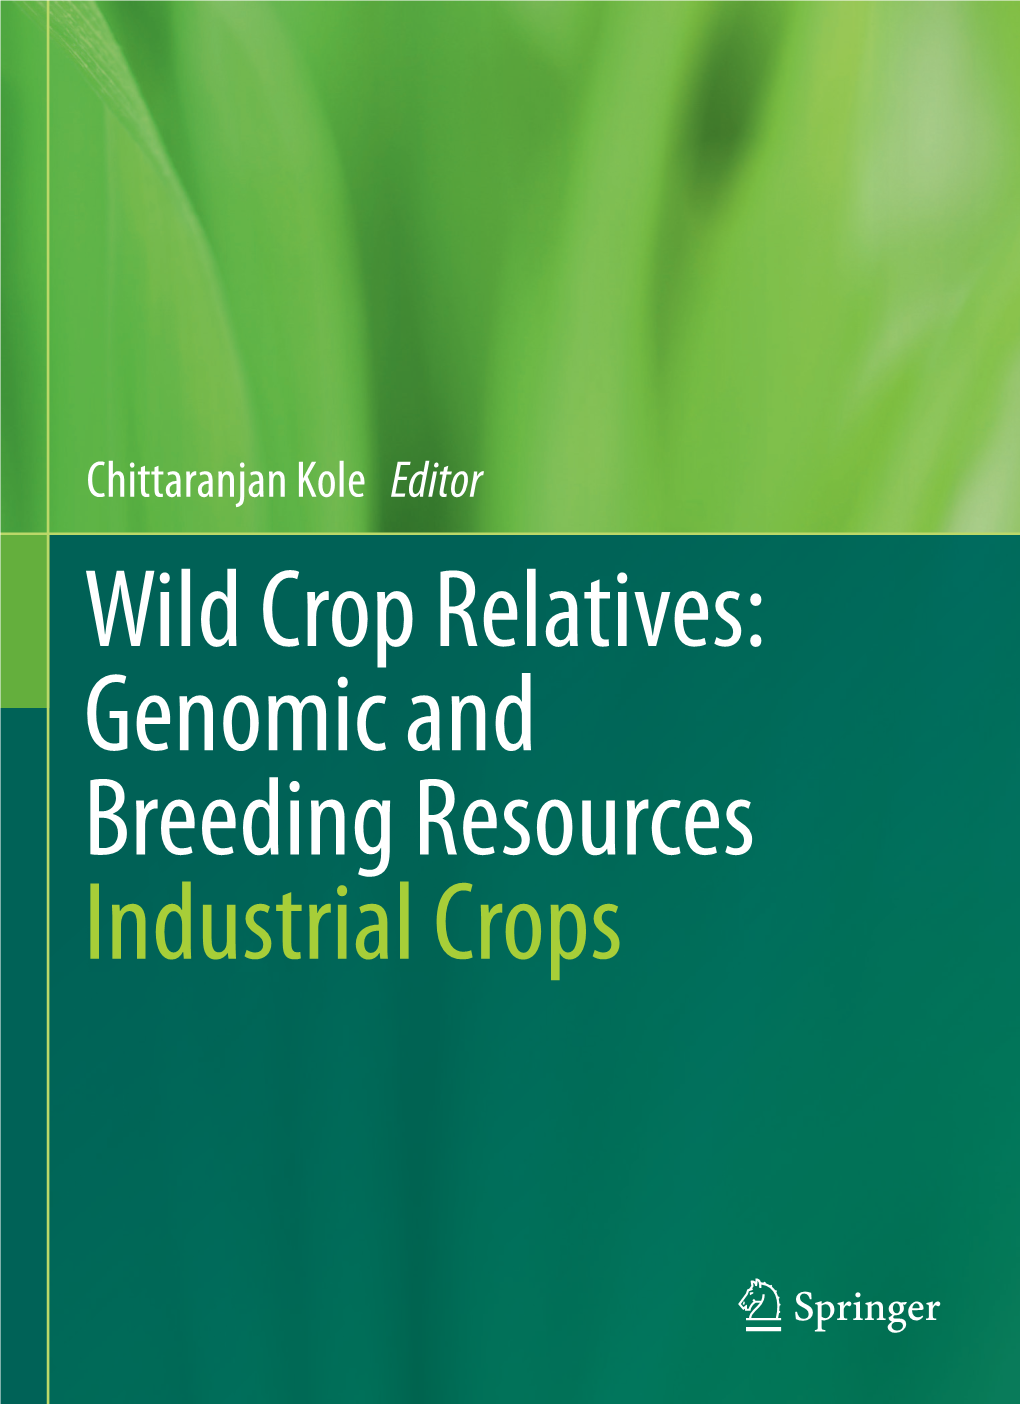 1 Wild Crop Relatives: Genomic and Breeding